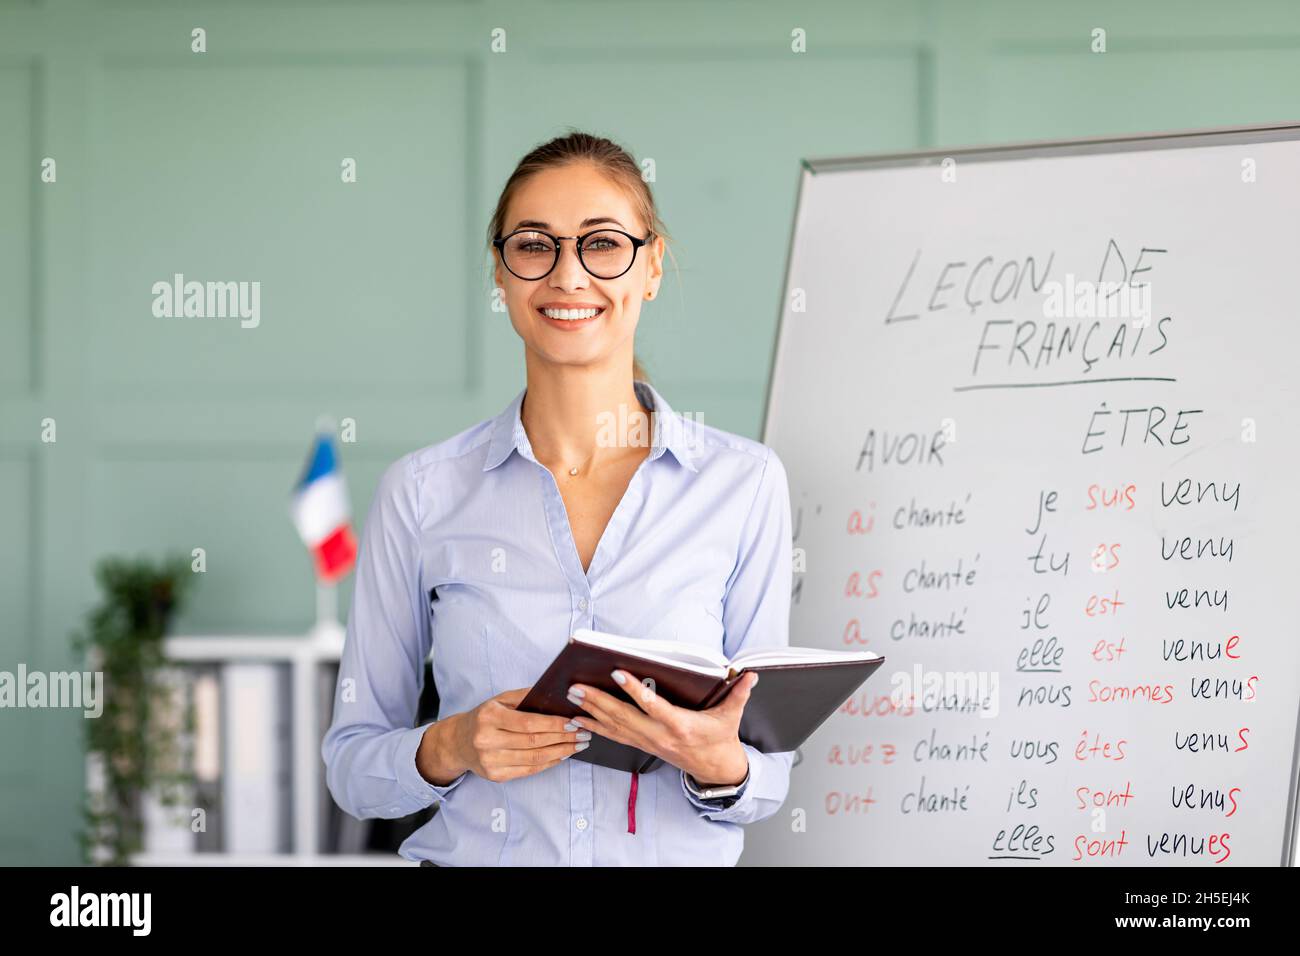 Concept d'apprentissage et de connaissance.Jeune femme souriante posant près d'un tableau blanc avec des règles de grammaire française Banque D'Images